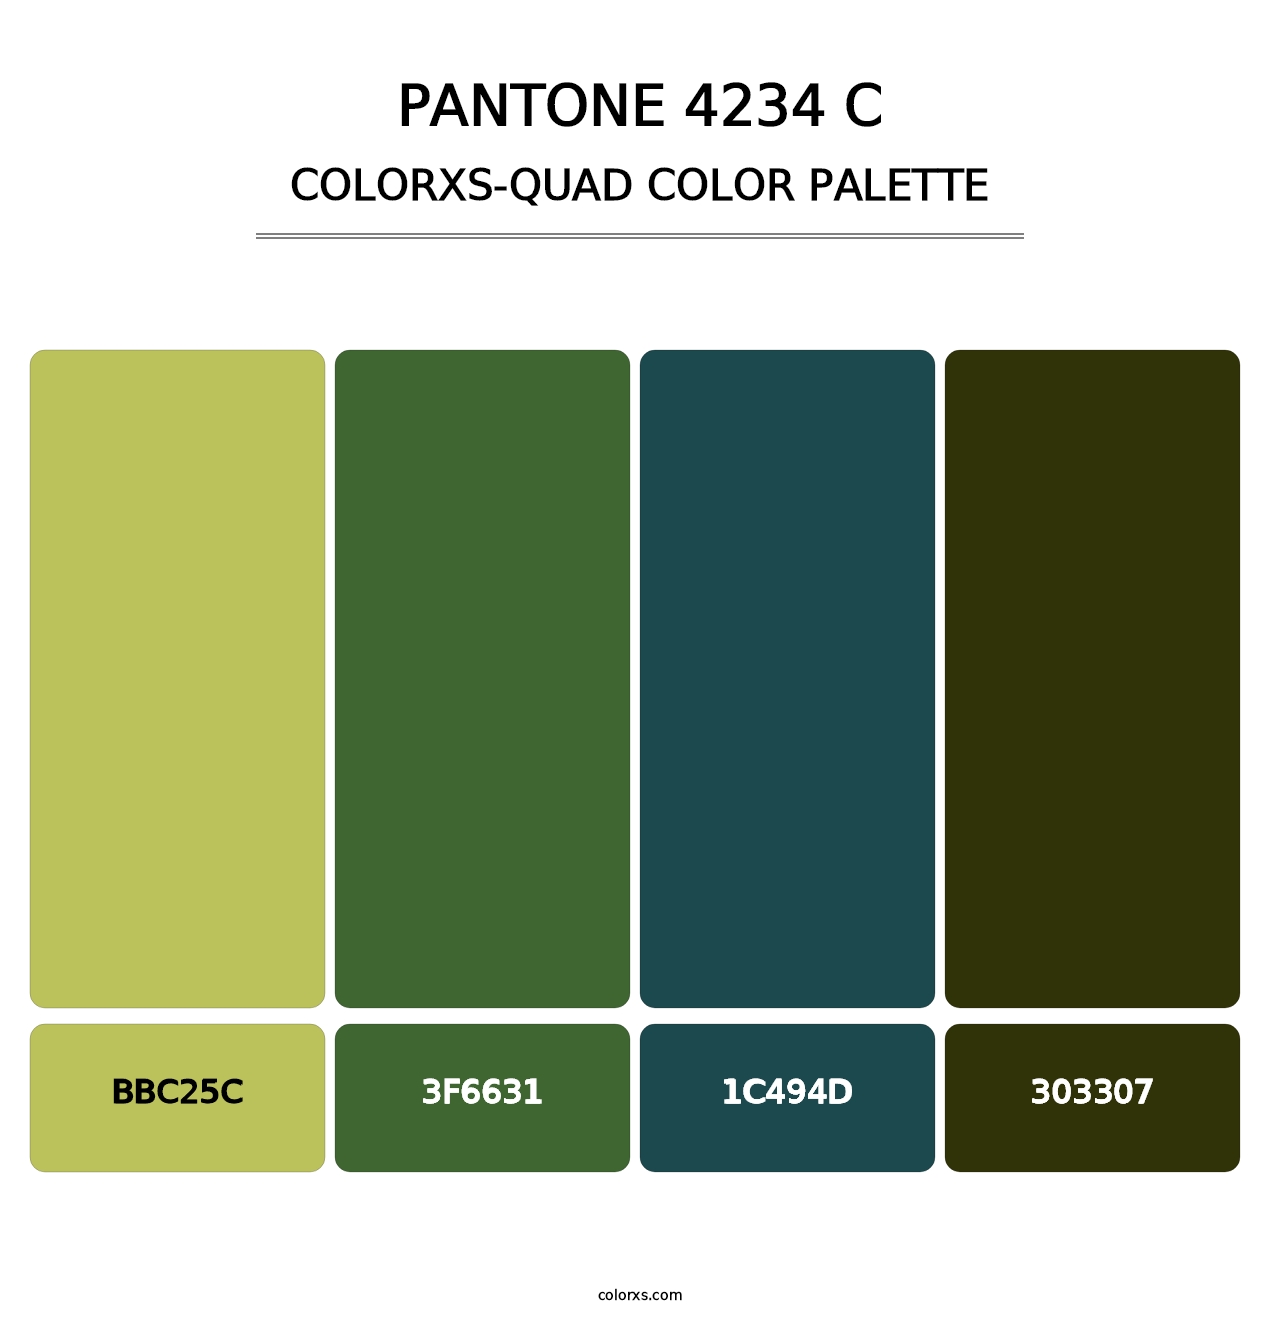 PANTONE 4234 C - Colorxs Quad Palette